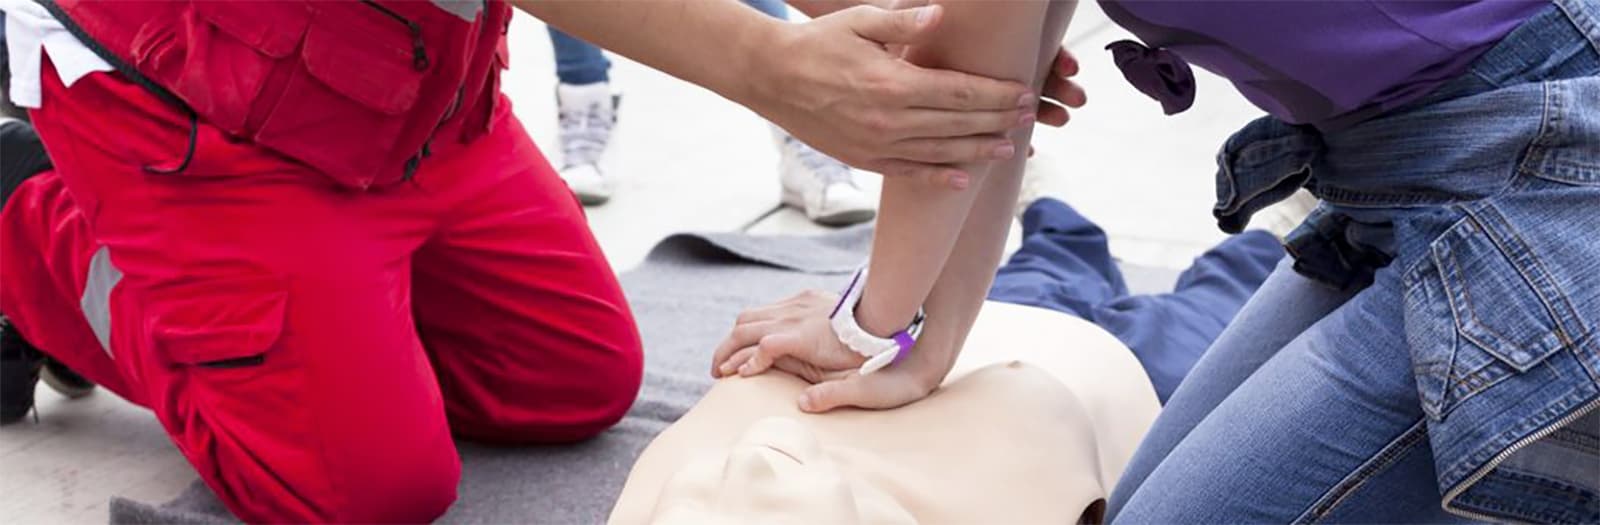 istruttore primo soccorso insegna massaggio cardiaco ad un corsista con un manichino